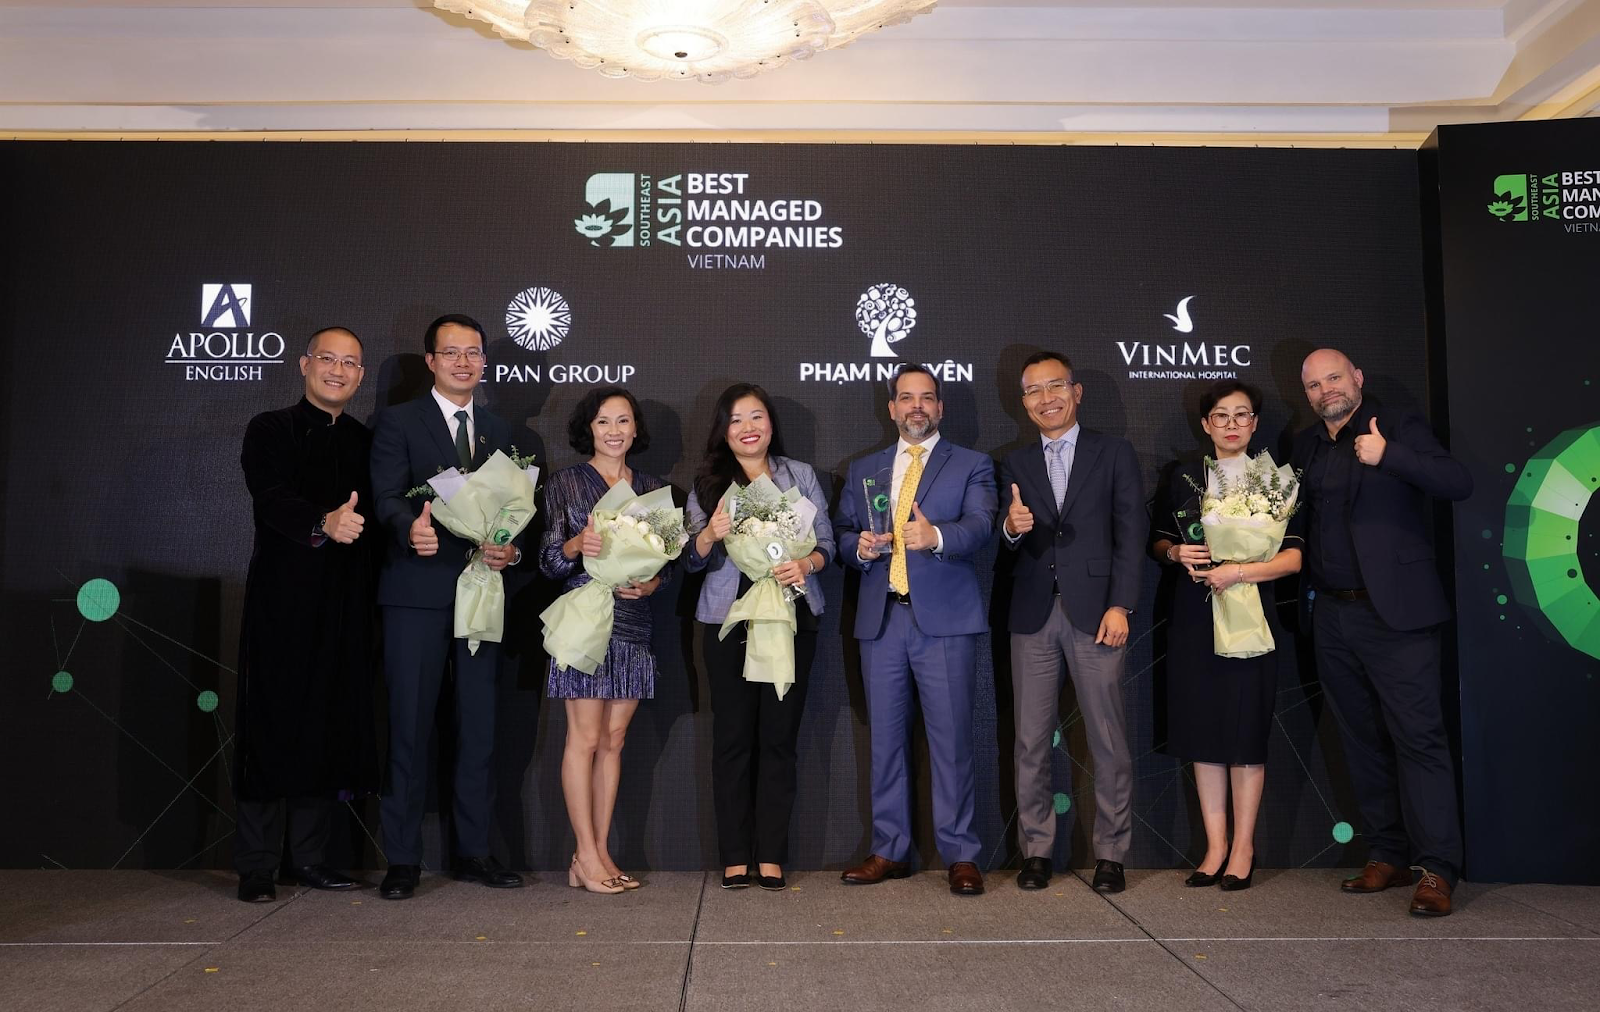 Bà Vũ Diệu Trang, CEO Apollo English (đứng giữa) tại lễ trao giải Asia Best Managed Companies 2022